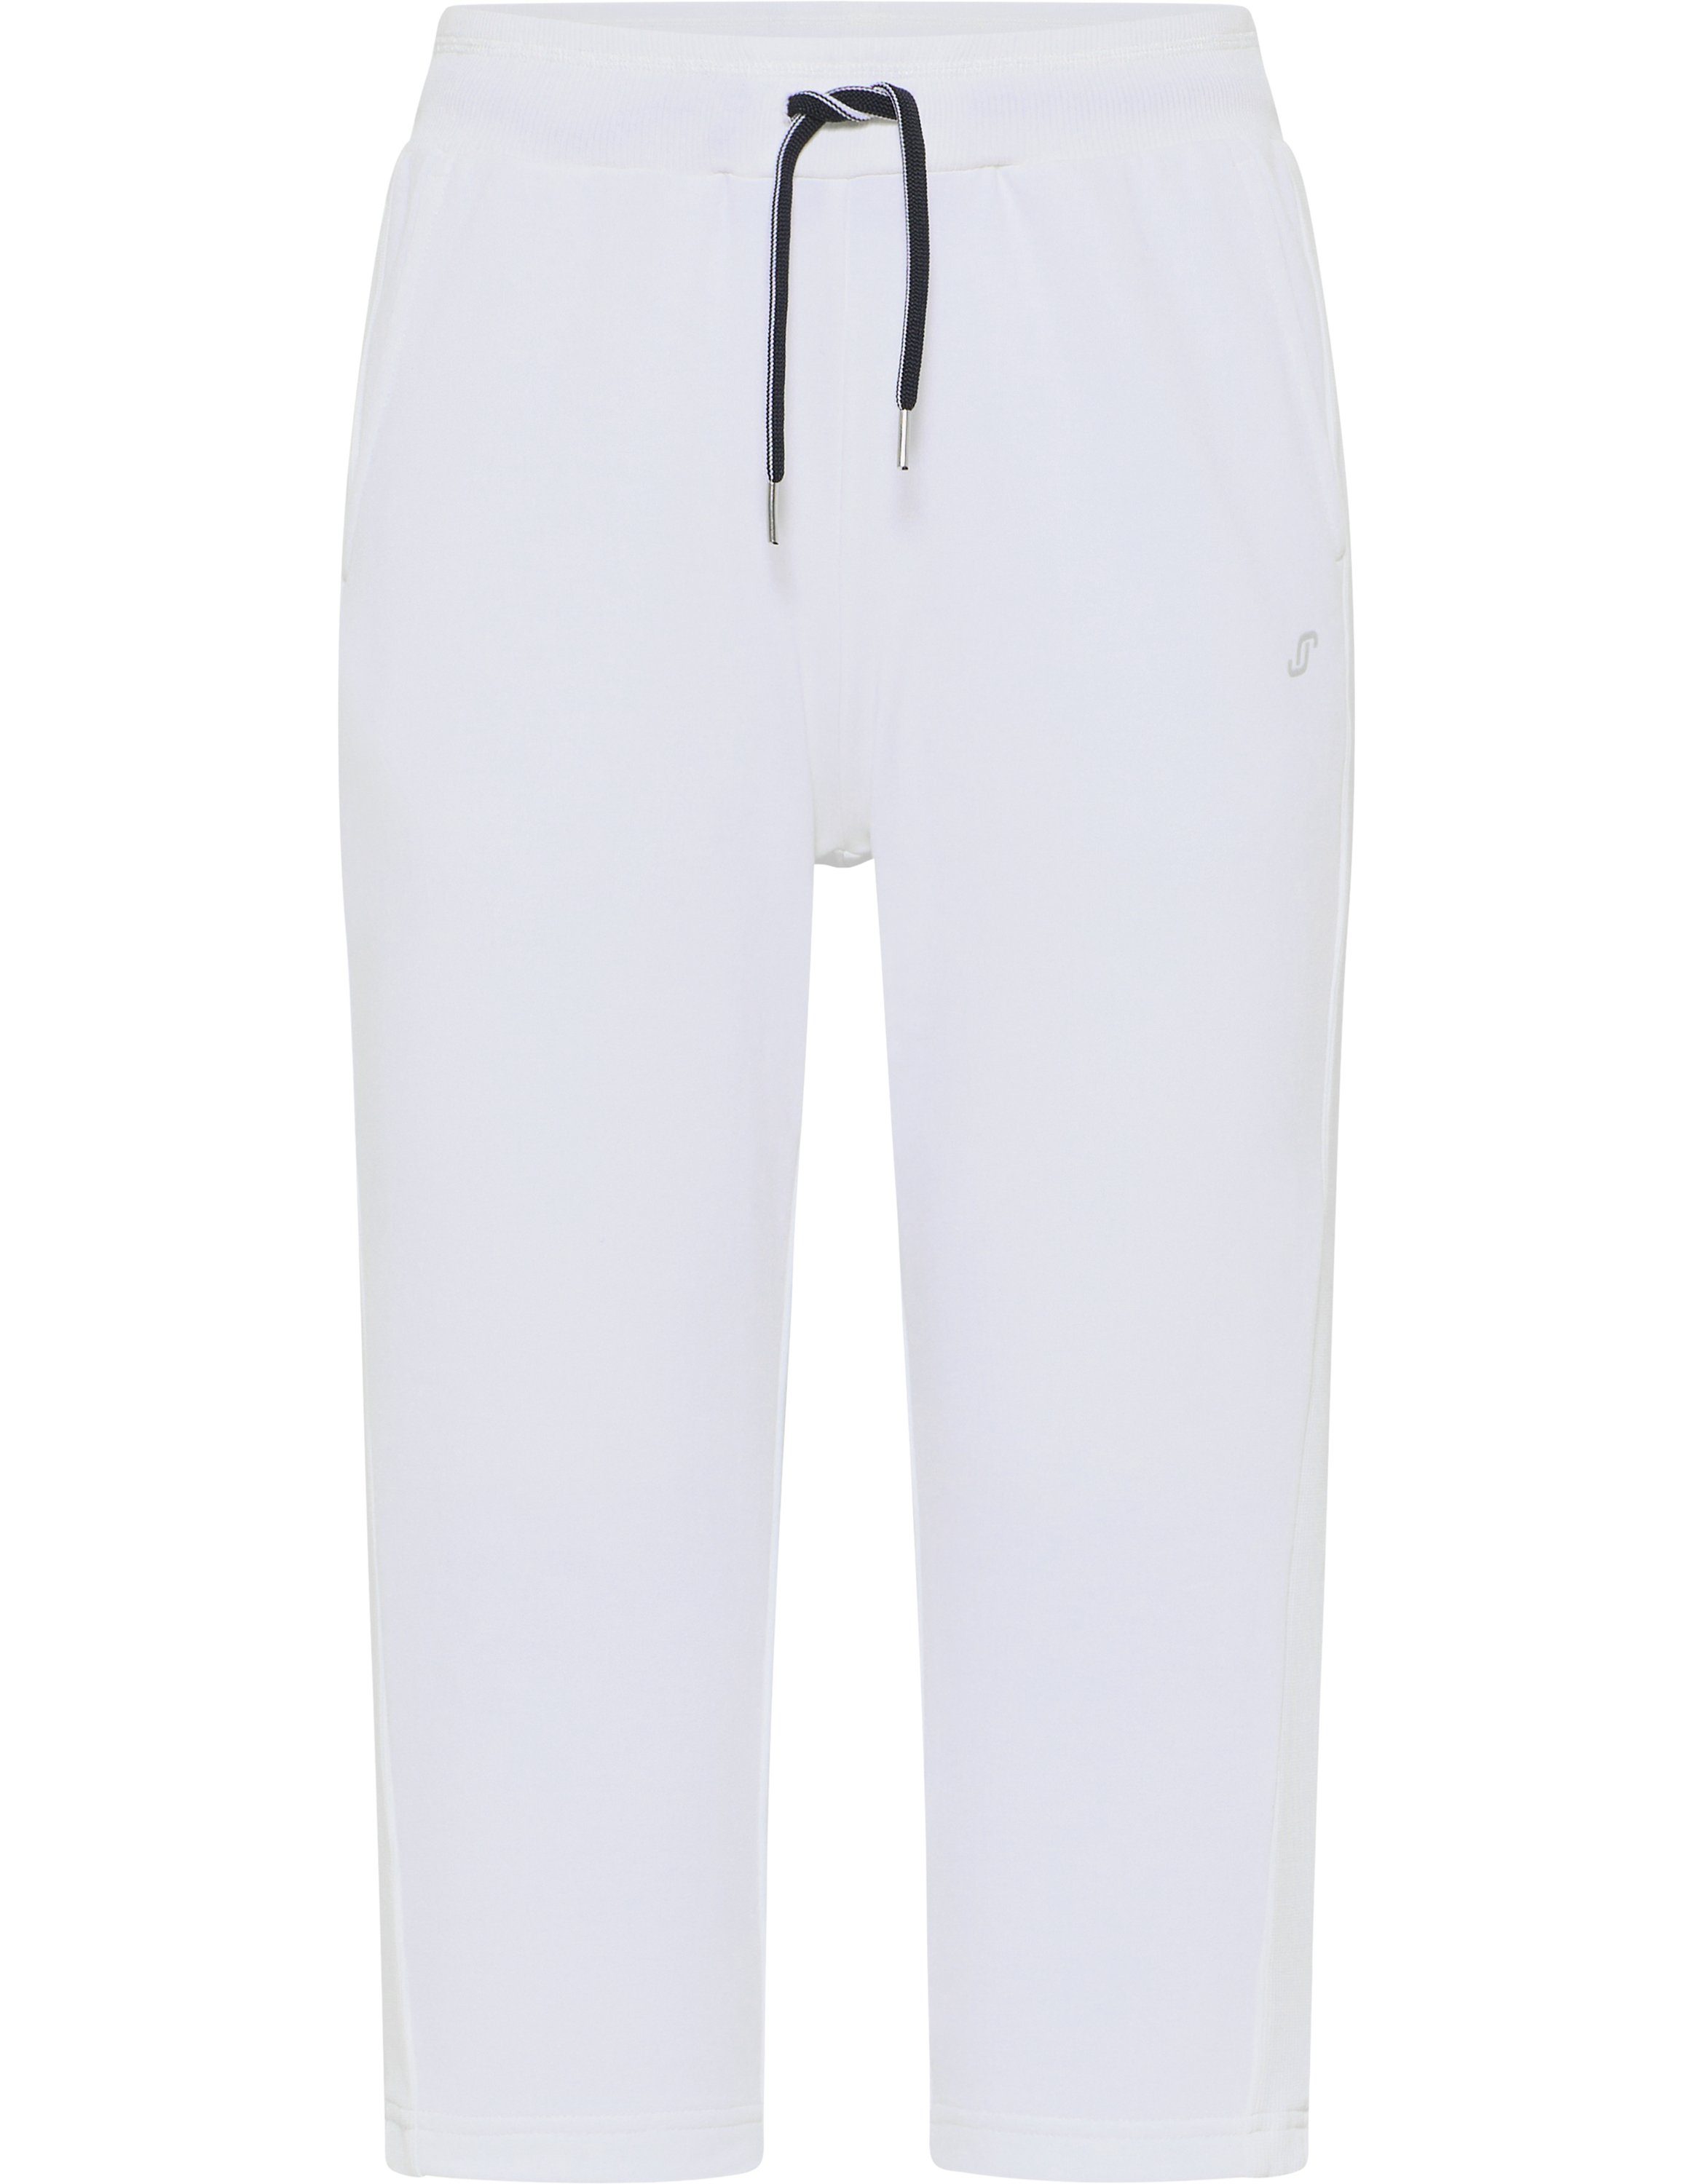 3/4-Hose white HARPER Sportswear Joy 3/4-Hose